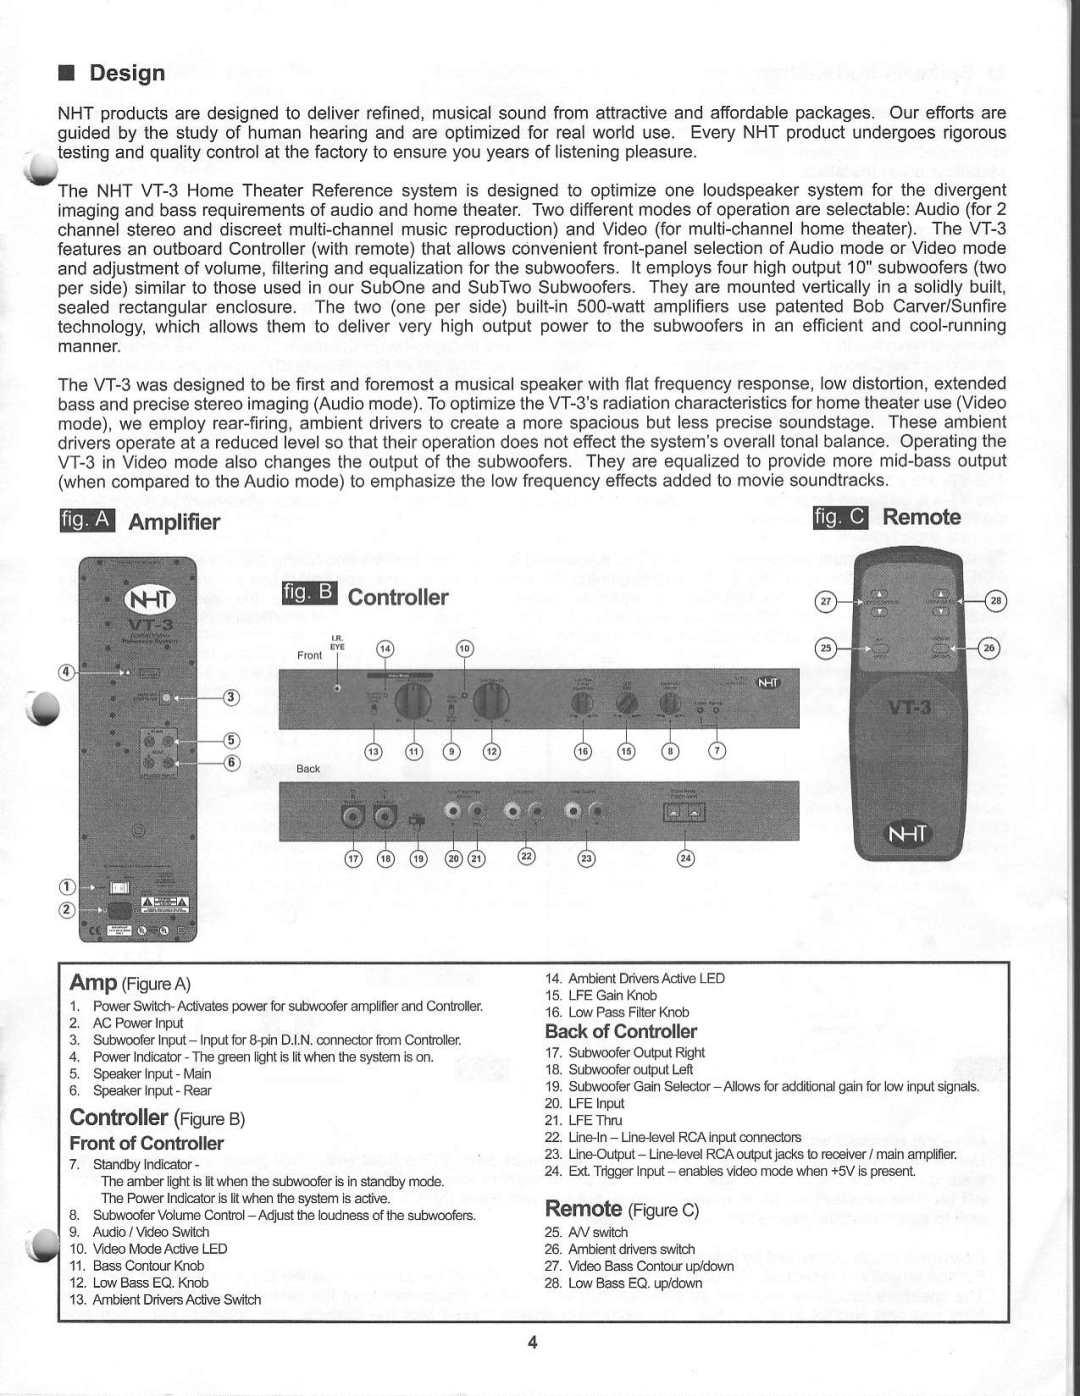 NHT VT-3 warranty ftp Remote, @ Controller, I Design, @Amplifier, ControllerFigureB, RemoteFigurec, v- _ . . . . _ . . _ 